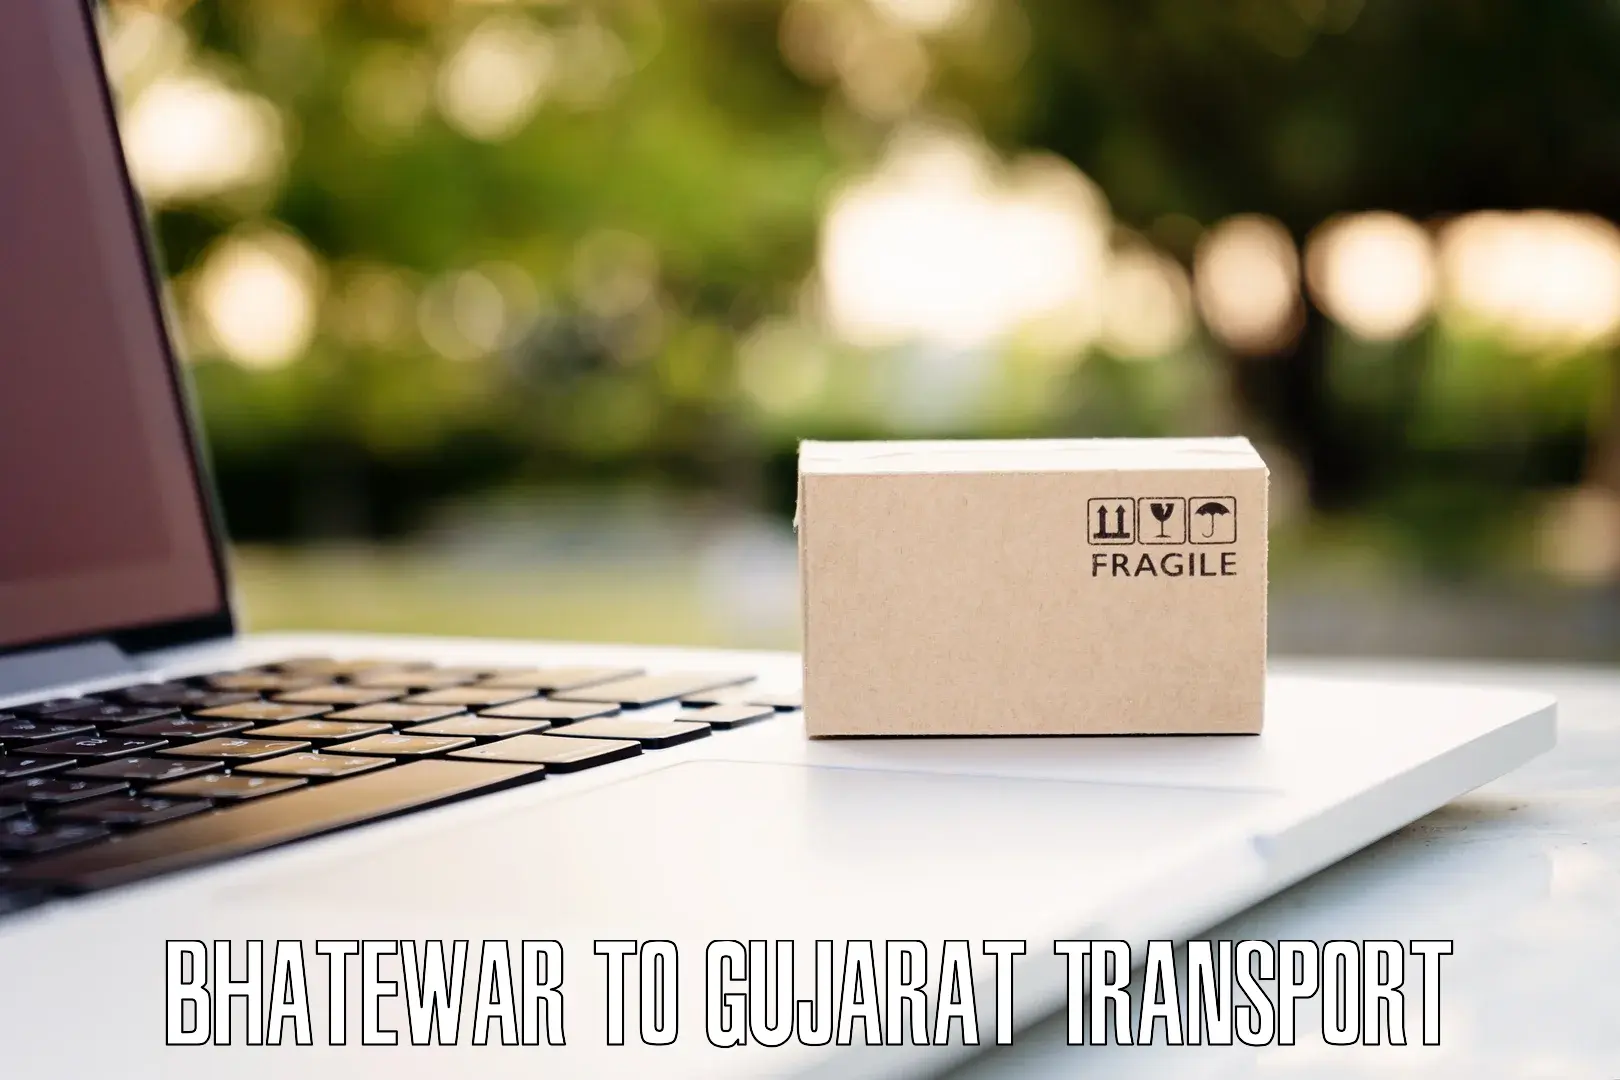 Land transport services Bhatewar to Gujarat